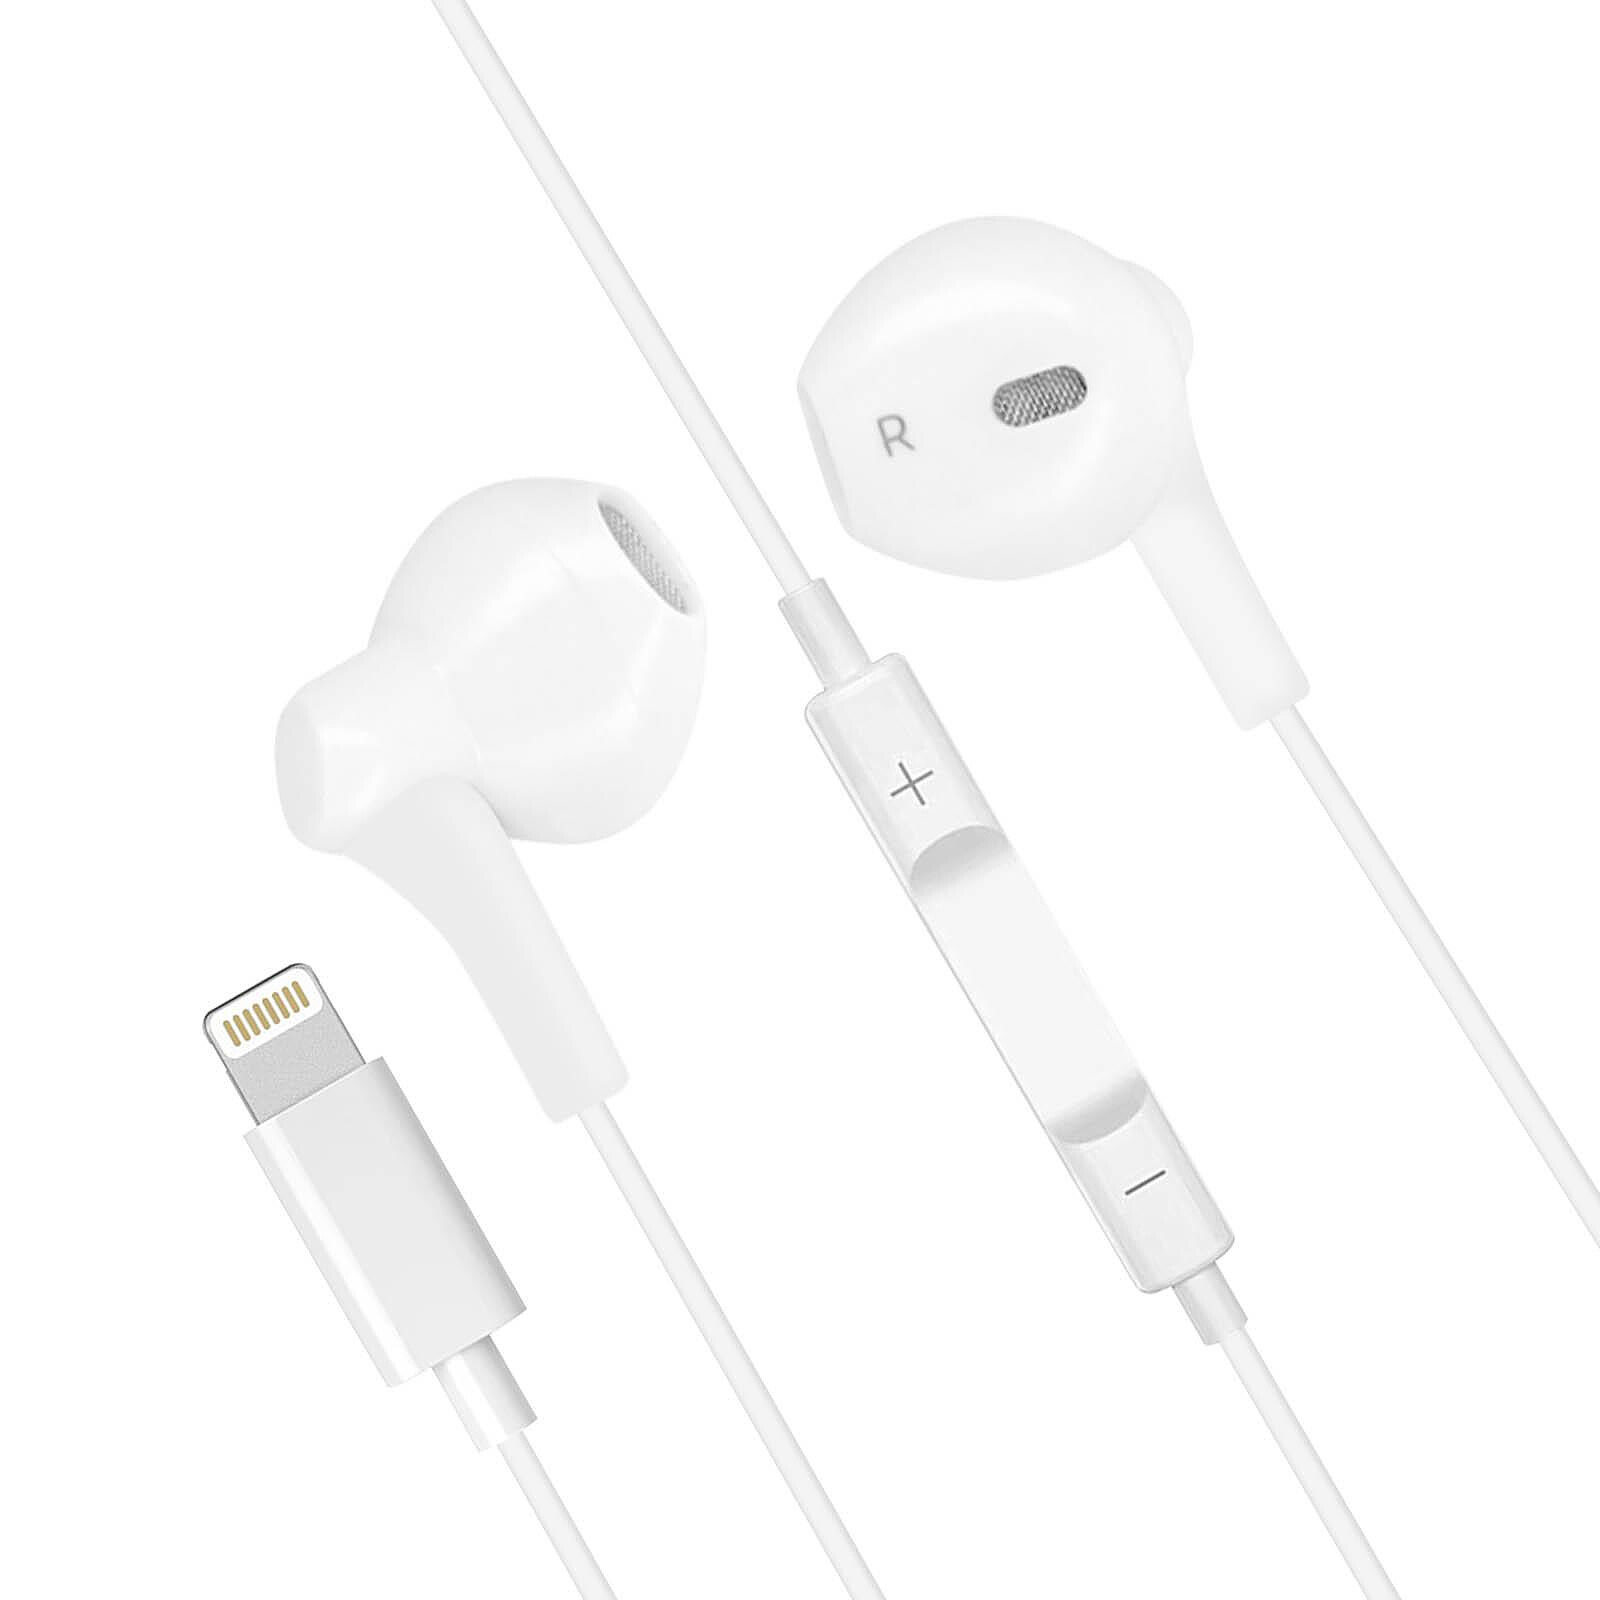 Ecouteurs intra-auriculaires Apple Earpods avec micro (Blanc) à prix bas